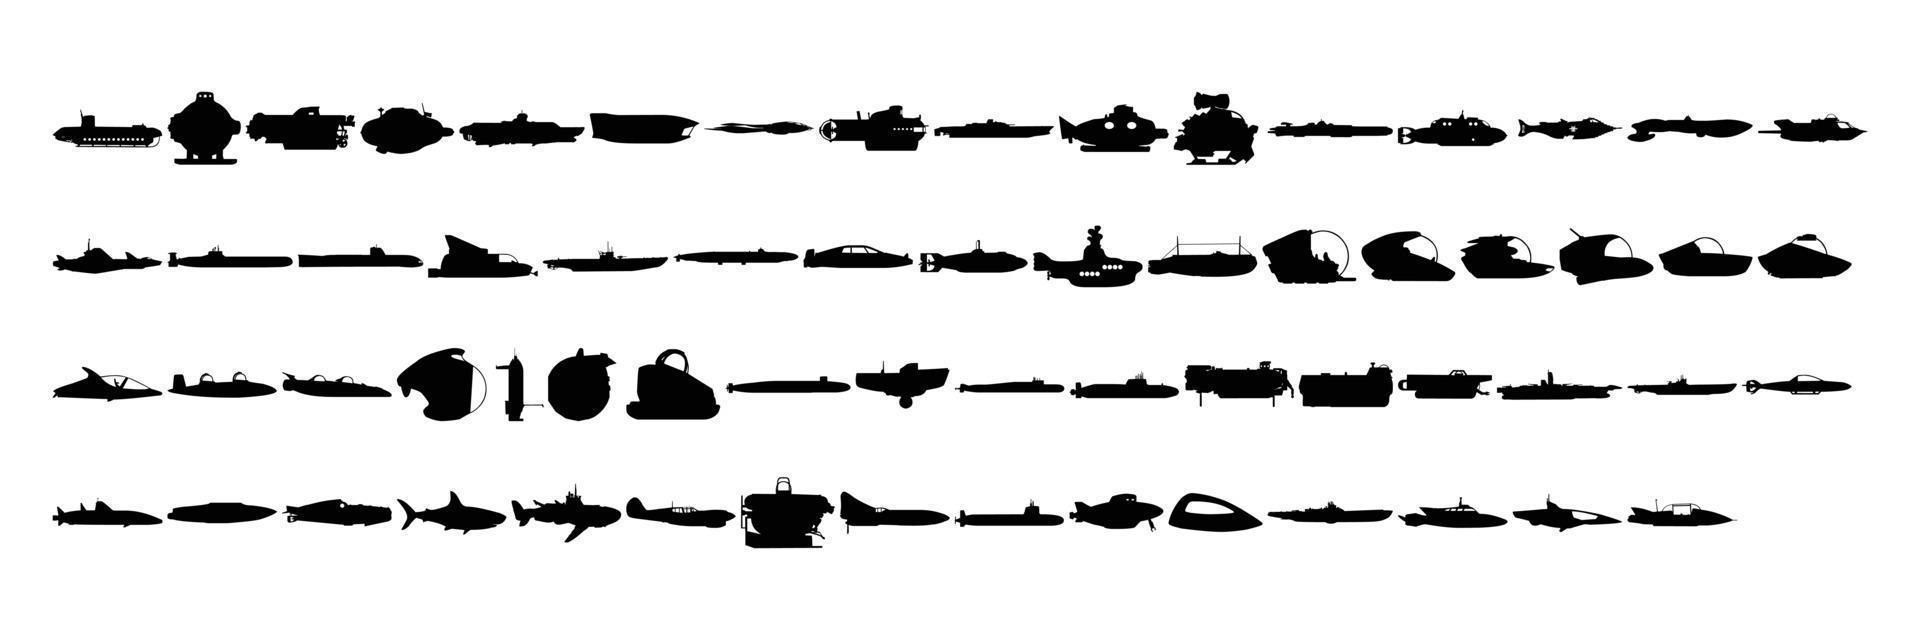 uma coleção de silhuetas de navios, barcos e outros veículos marítimos para ícones em um fundo branco vetor